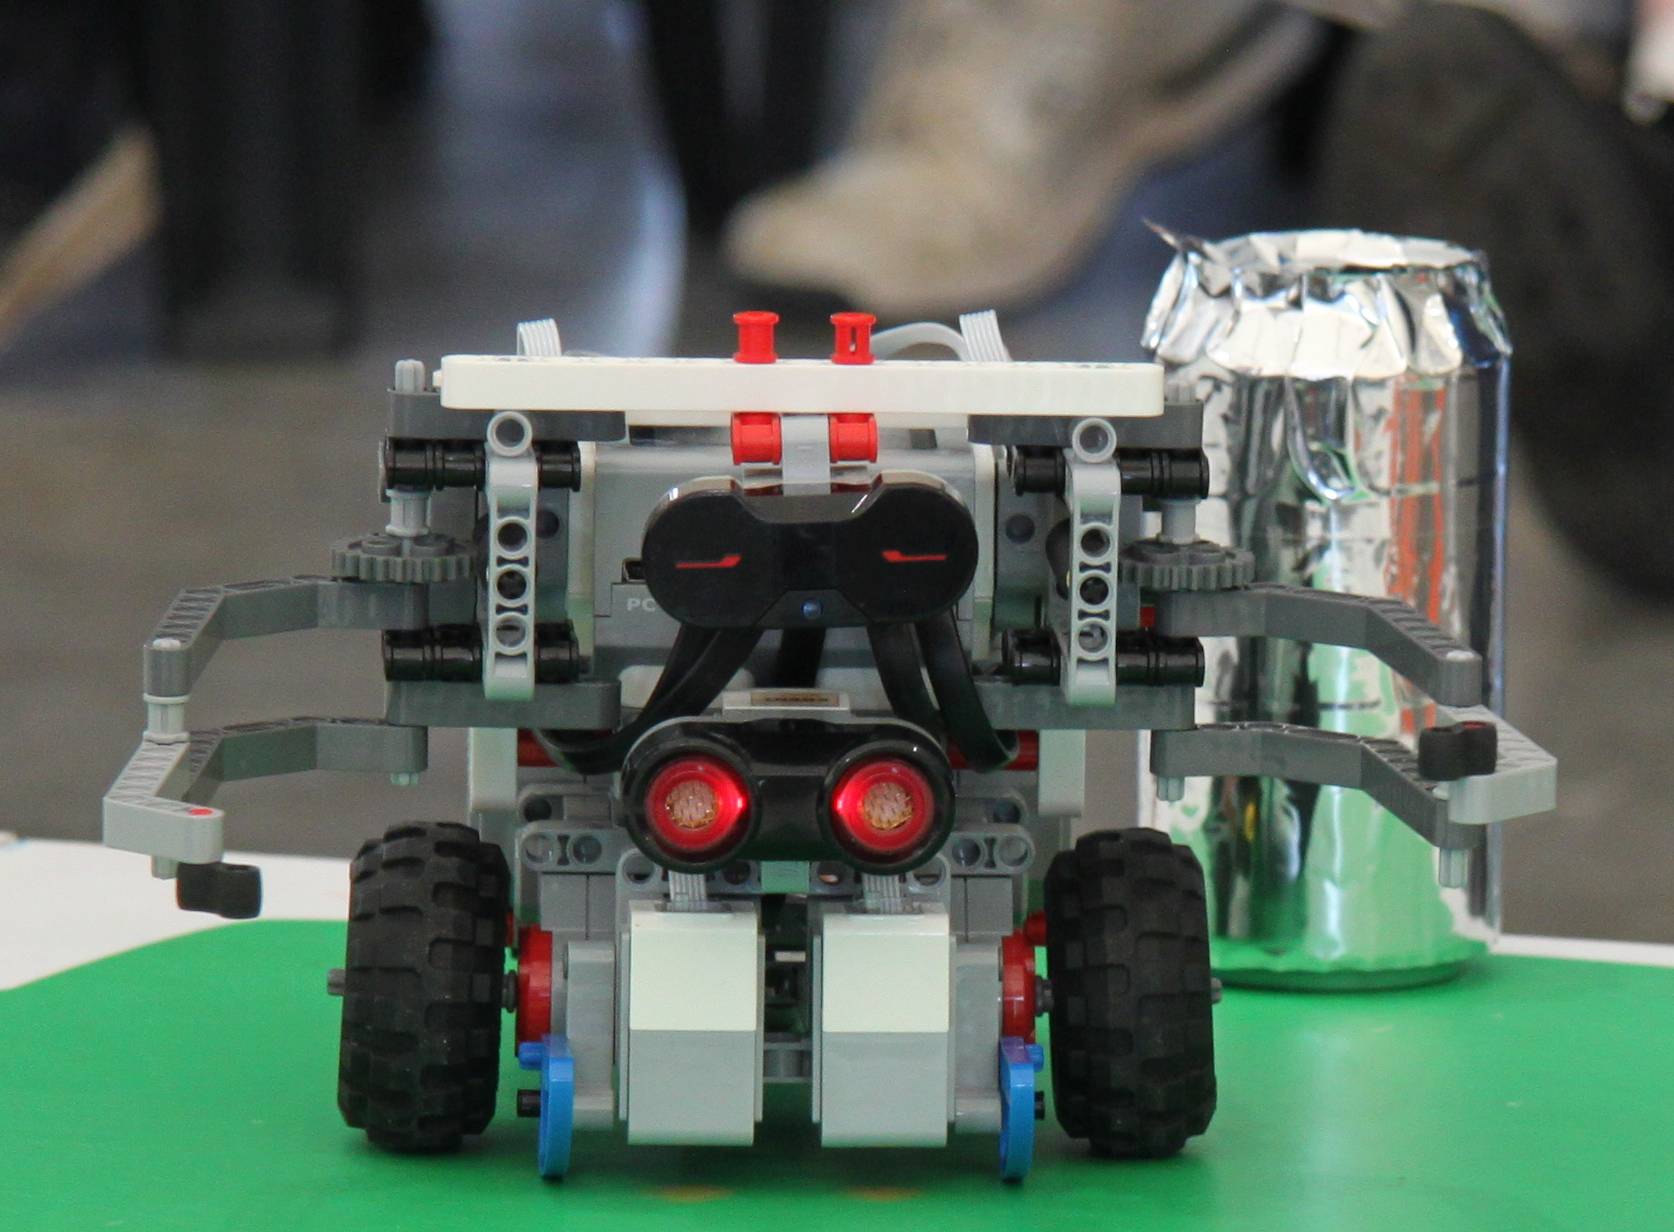 Lego Mindstorms robot